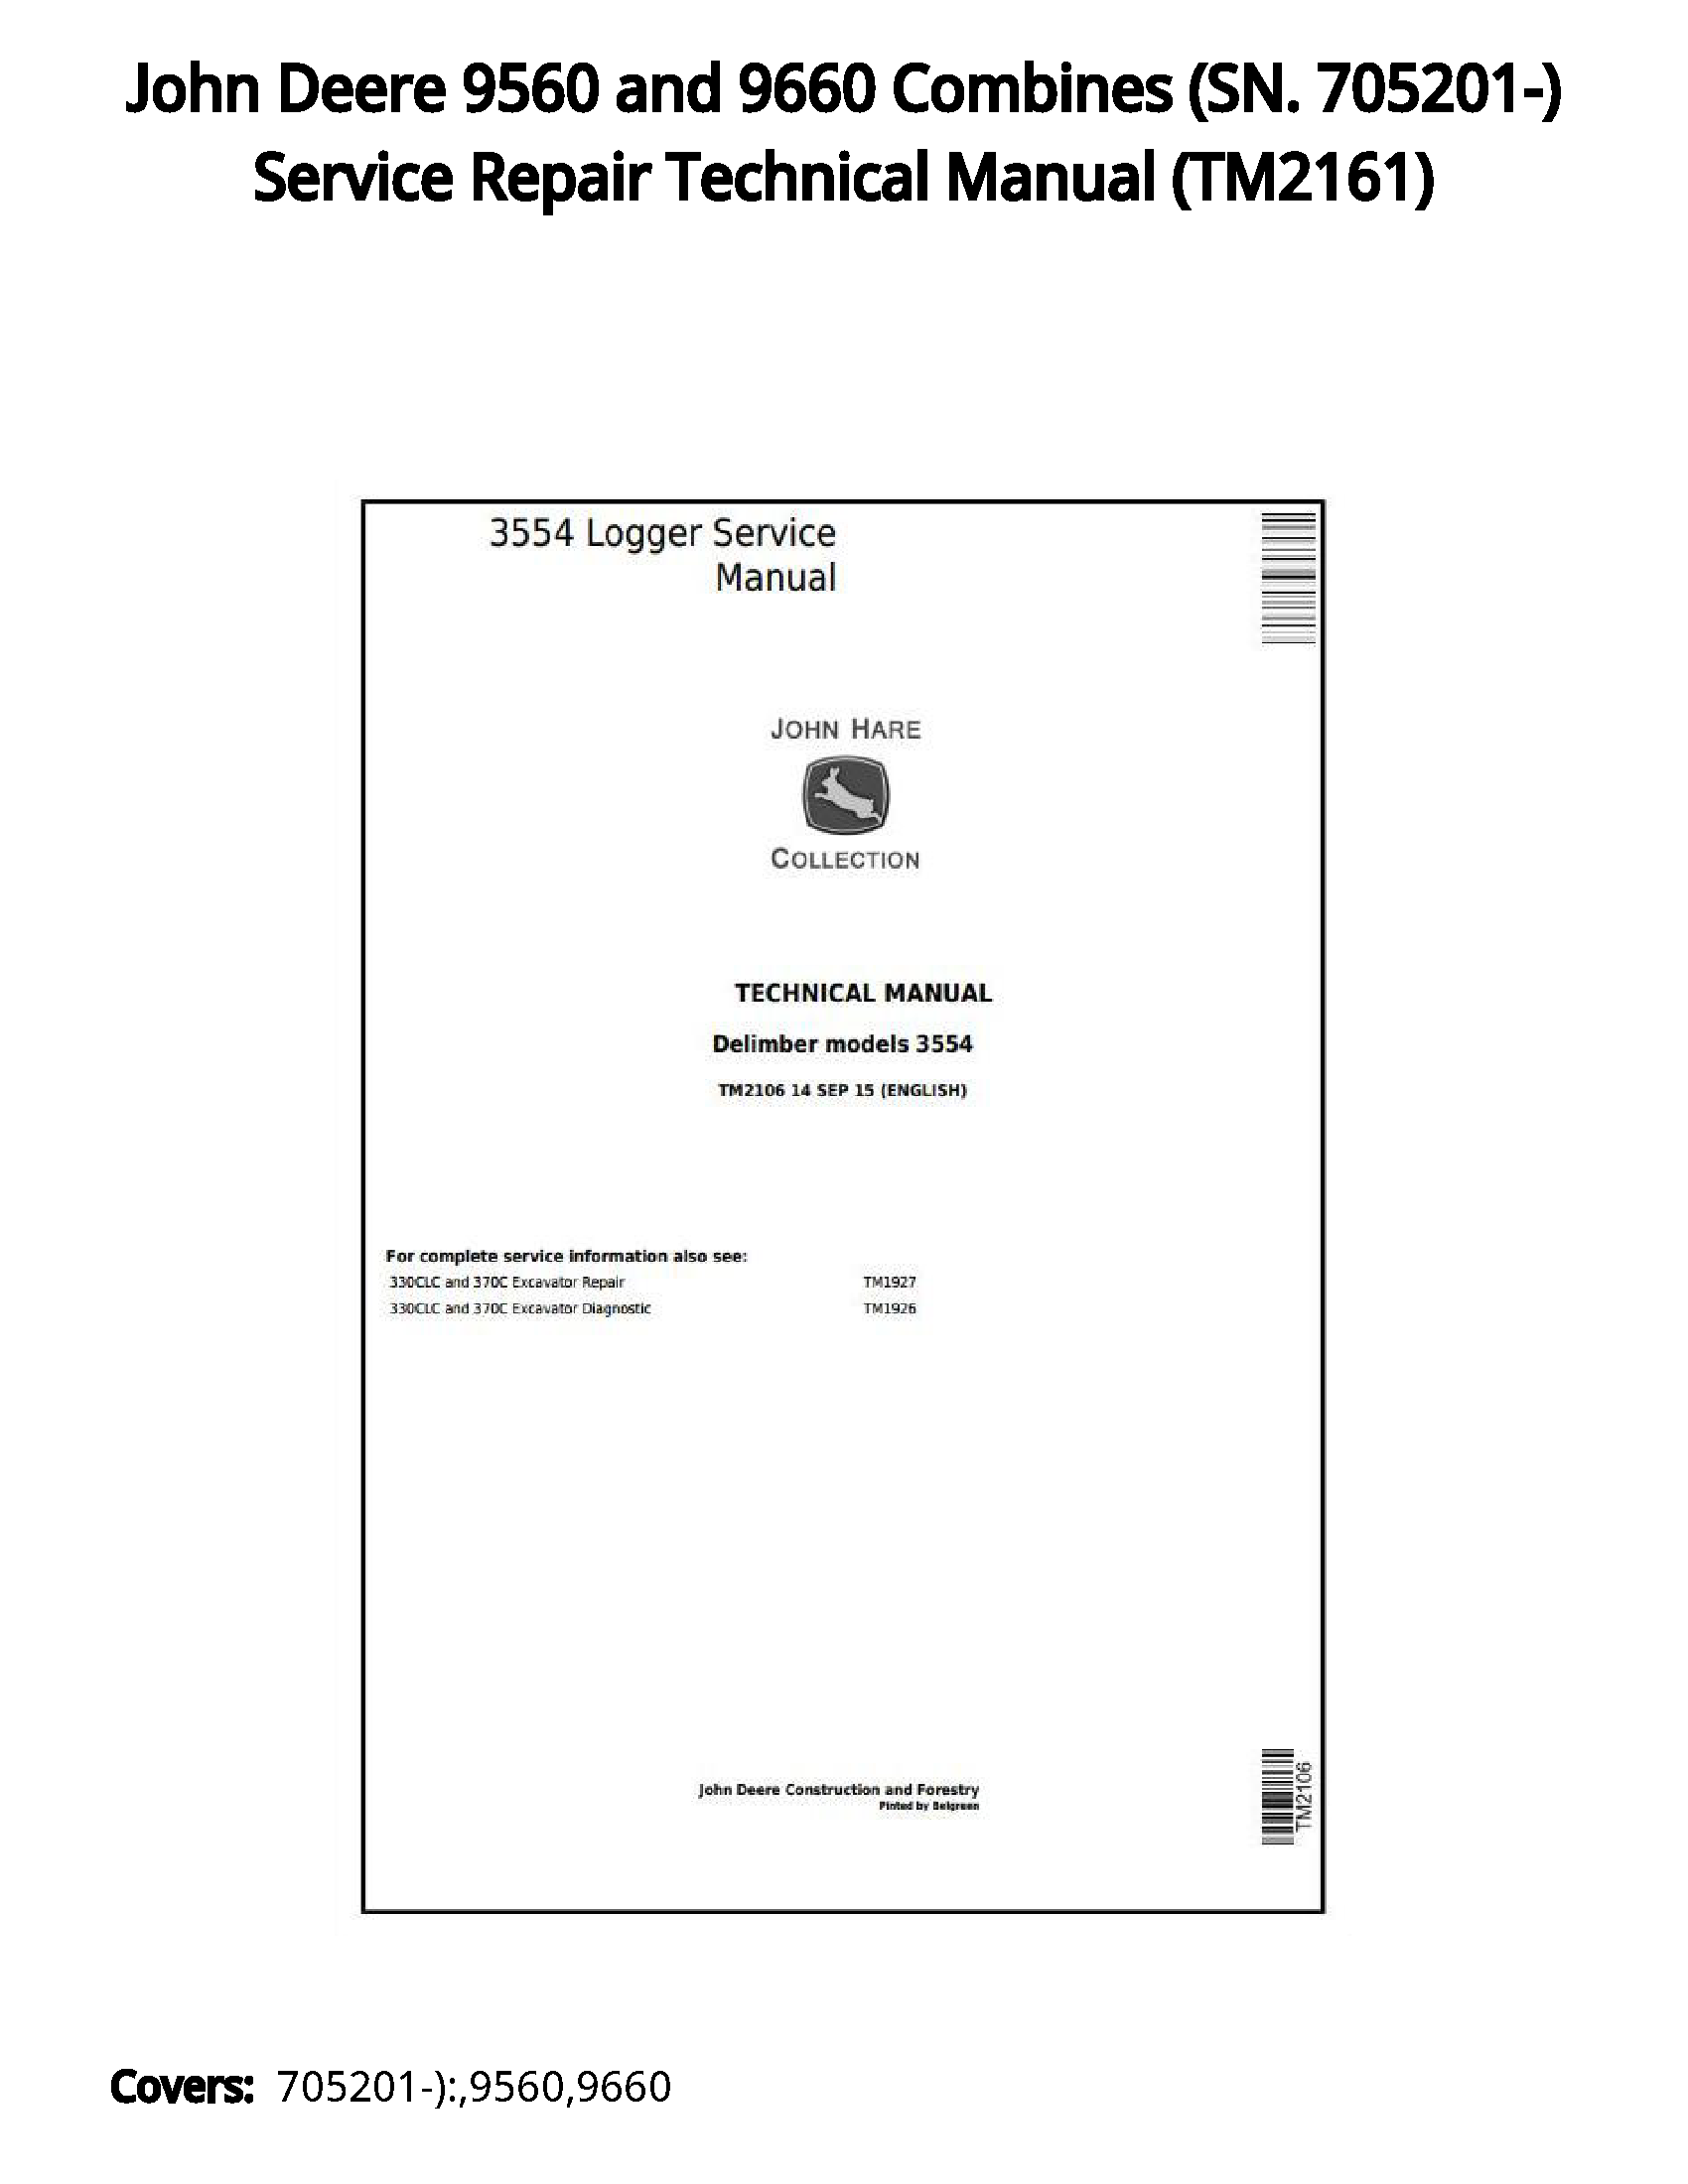 John Deere 9560 and 9660 Combines (SN. 705201-) Service Repair Technical Manual - TM2161